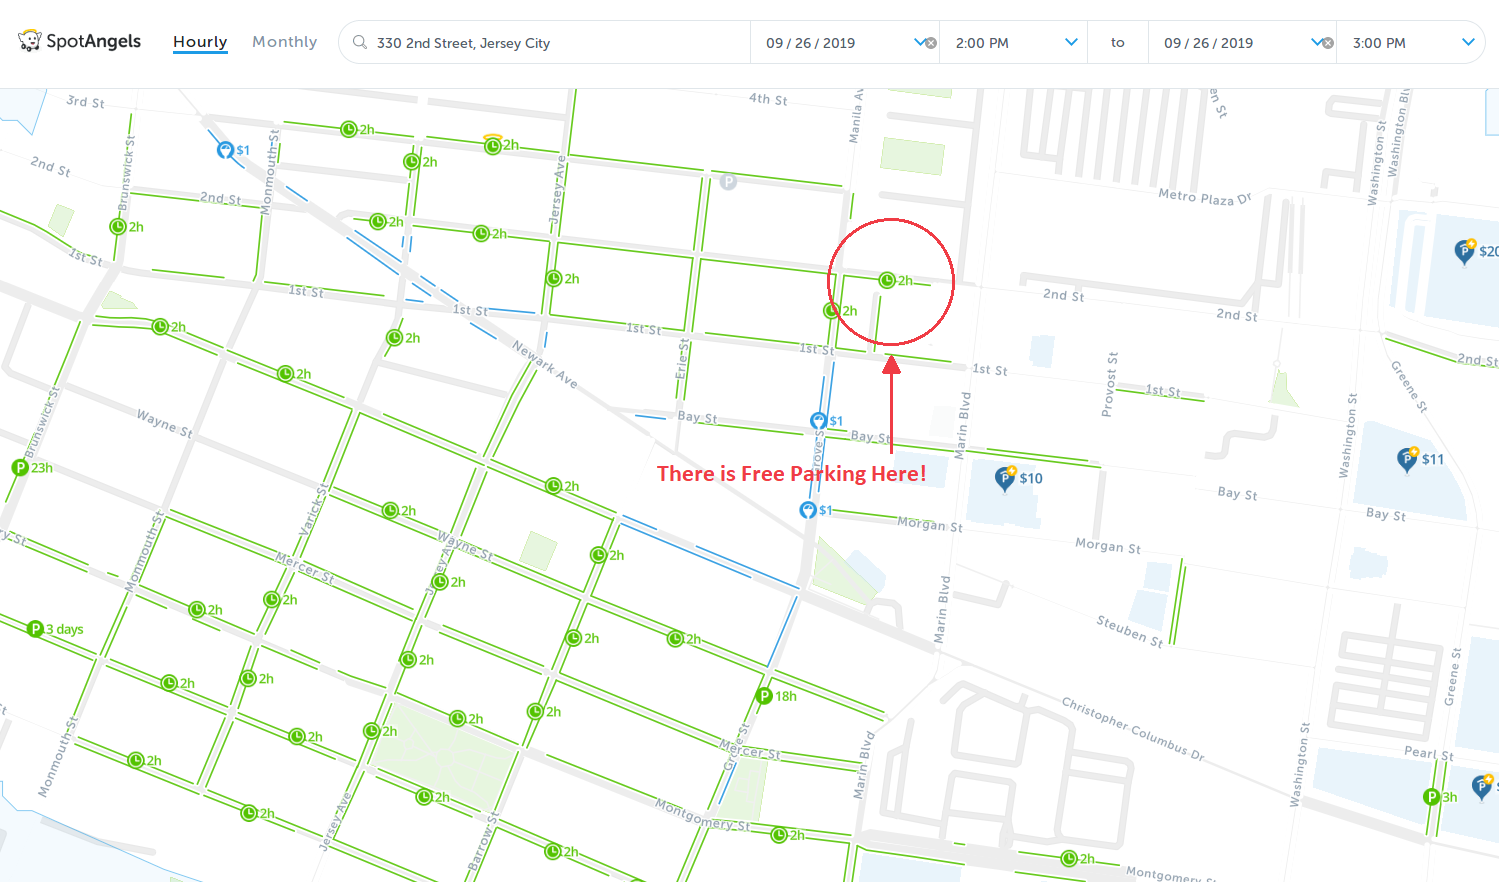 map of street parking in Jersey City - SpotAngels